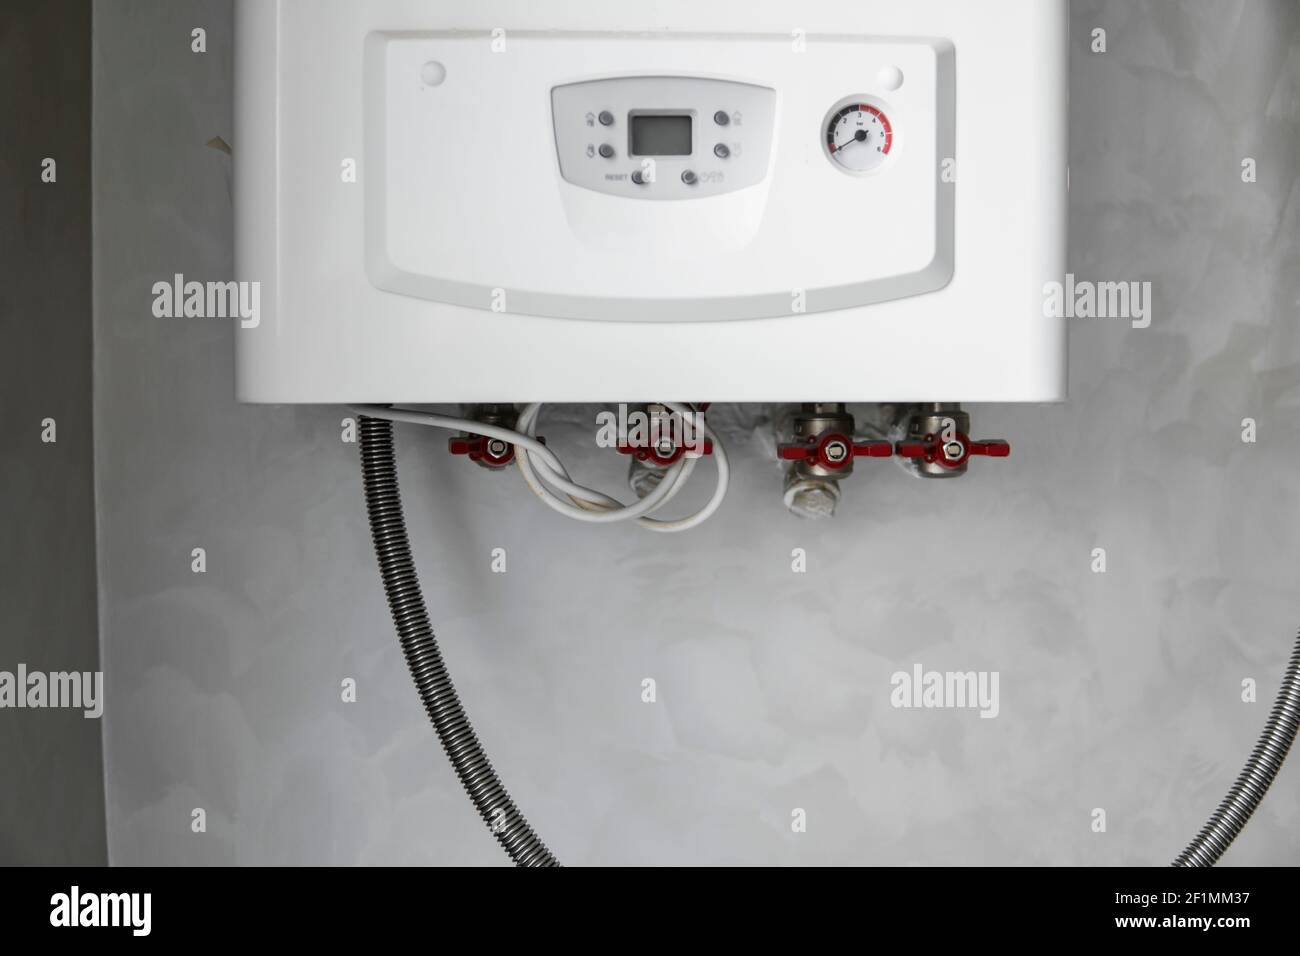 Chaudière à gaz blanche moderne montée sur un mur gris dans une cuisine.  Chauffe-eau. Chauffage de l'eau, écologie Photo Stock - Alamy